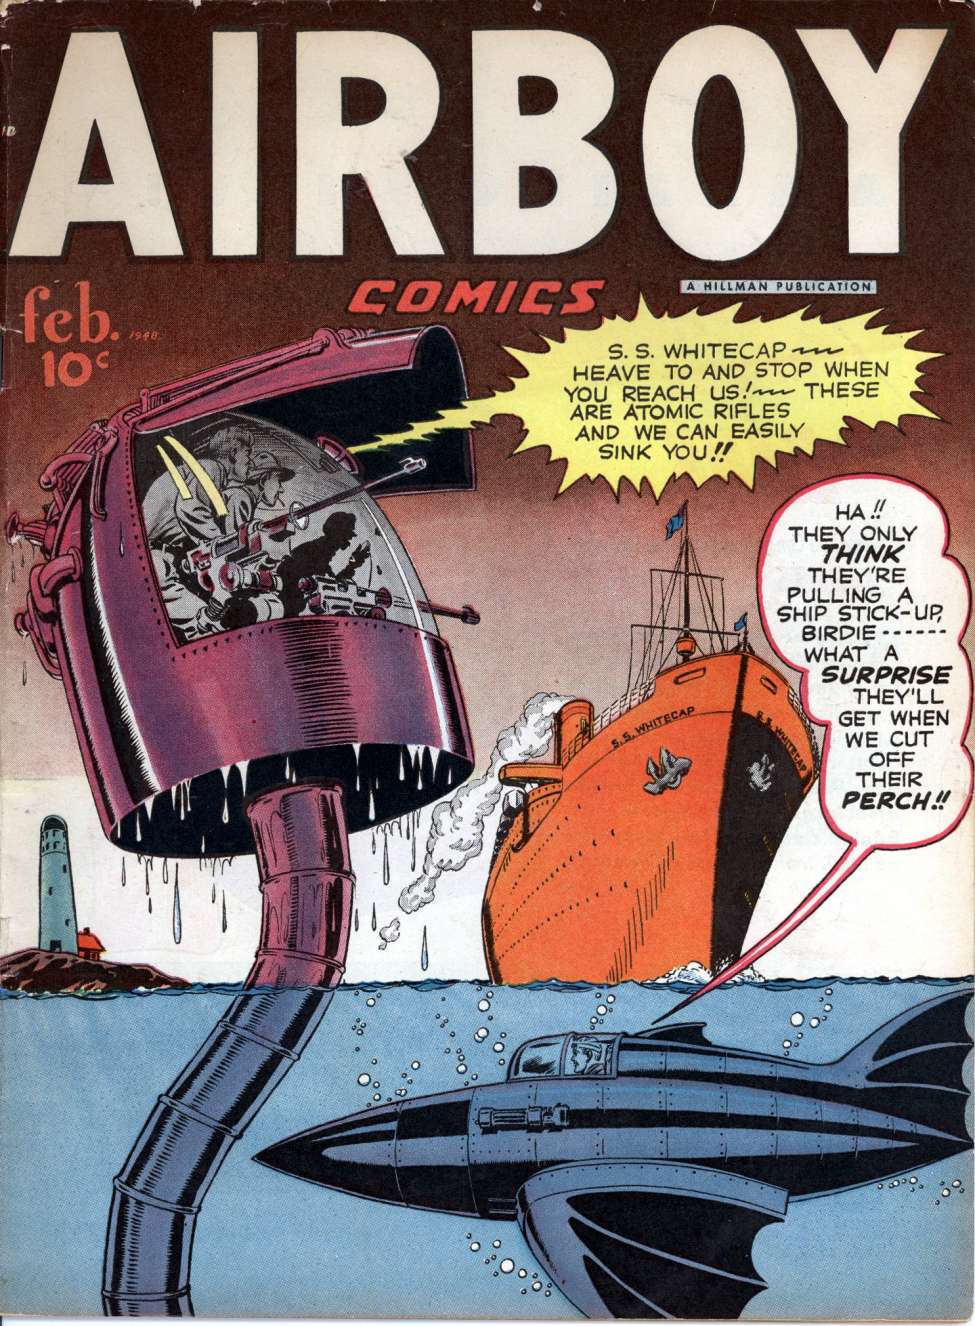 Book Cover For Airboy Comics v5 1 (alt)